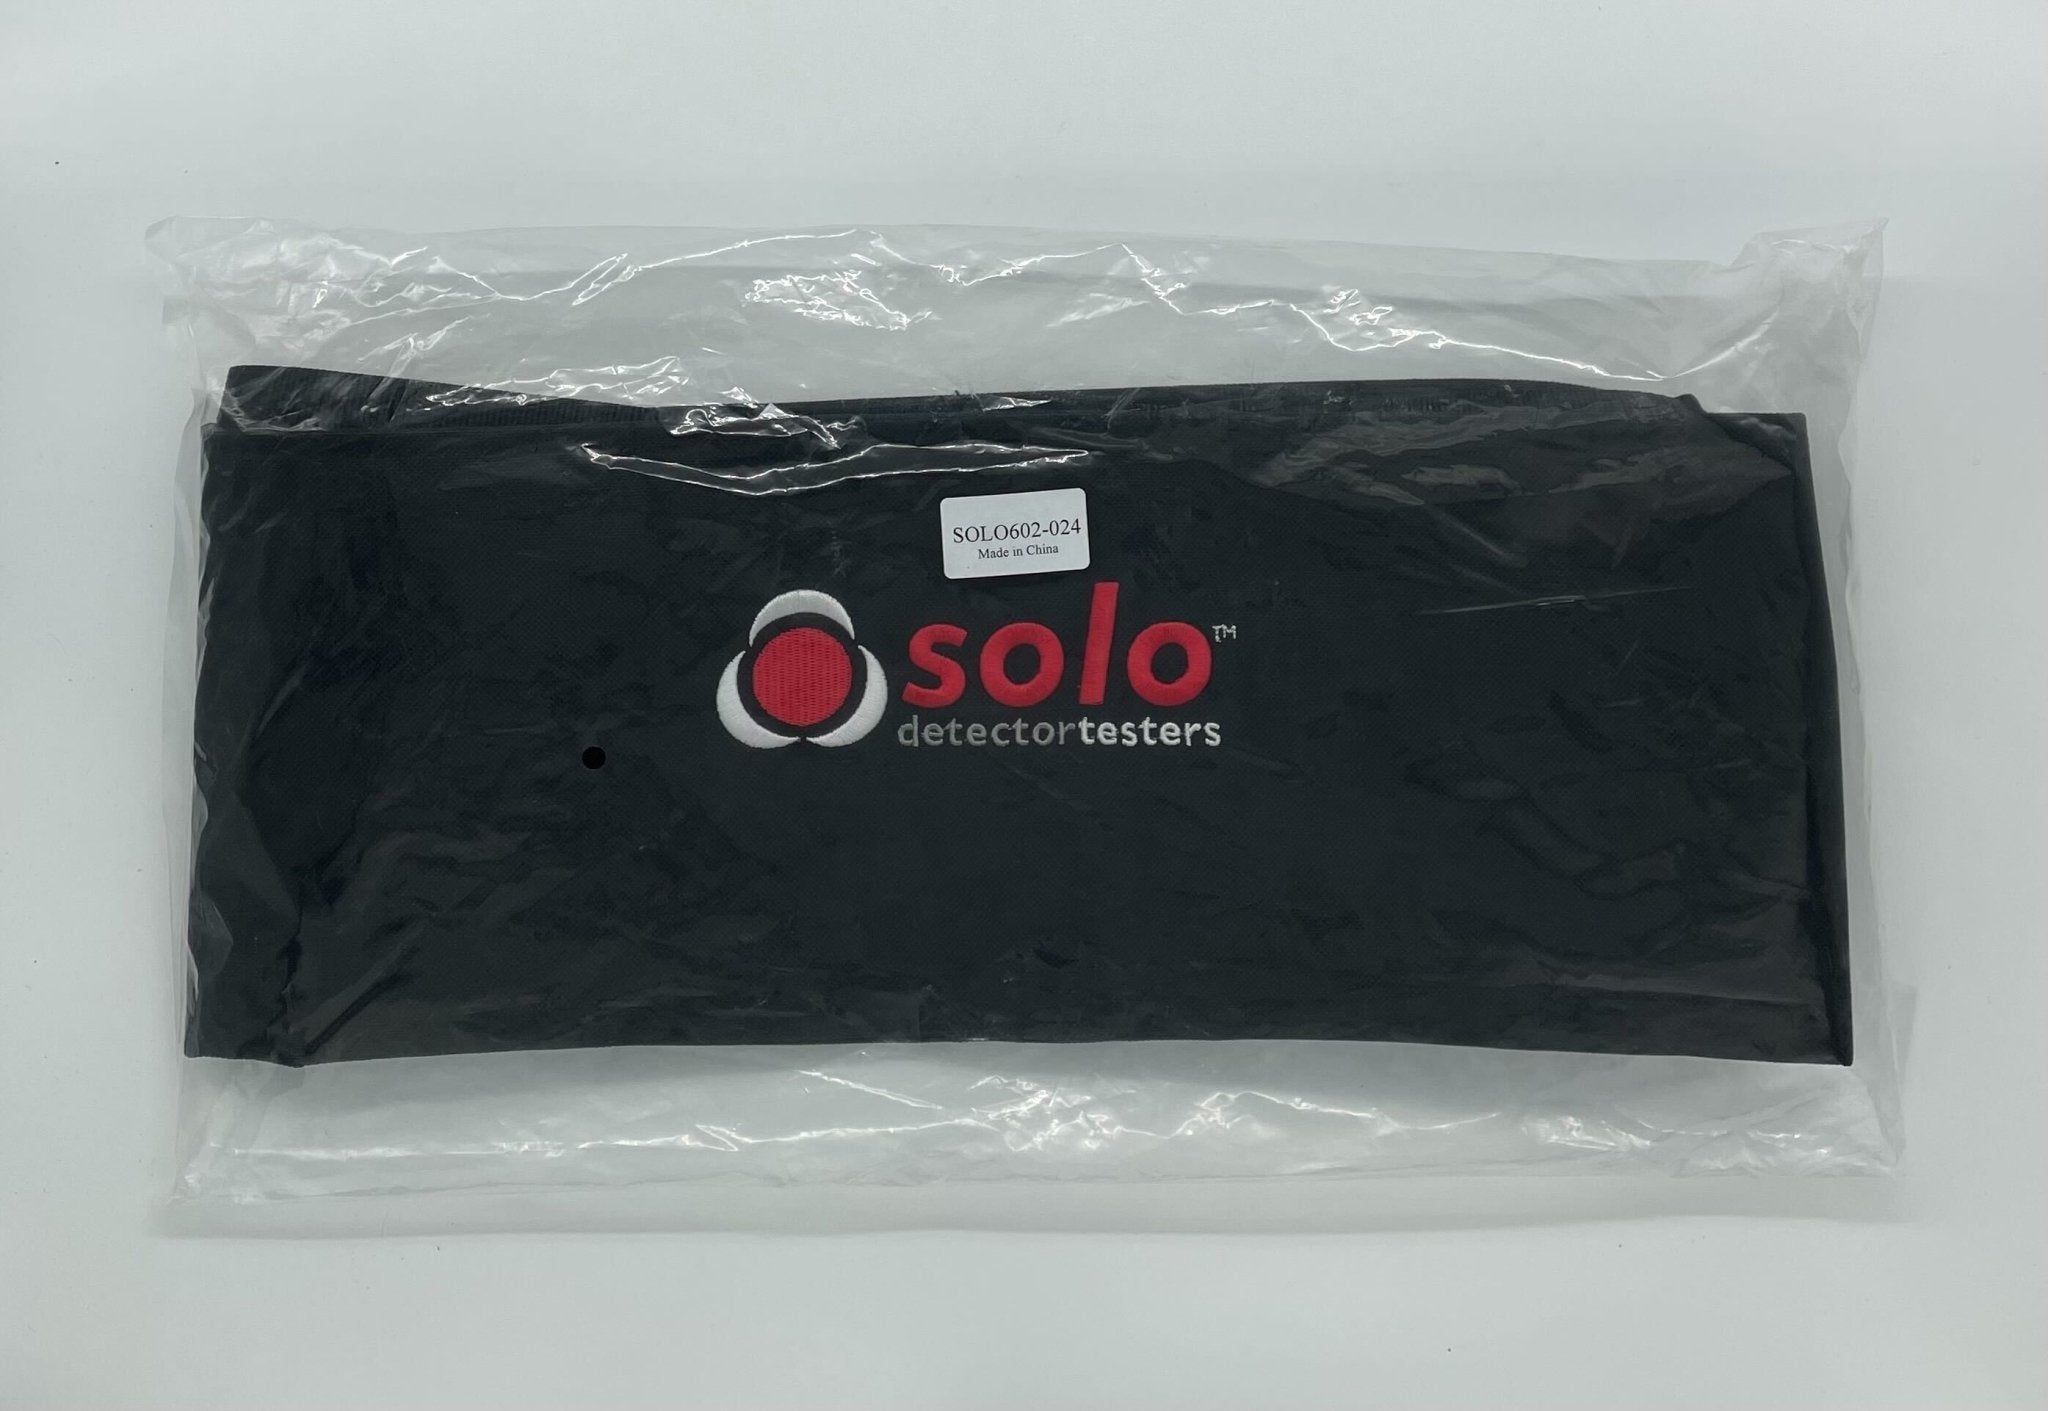 SDi SOLO602 - The Fire Alarm Supplier